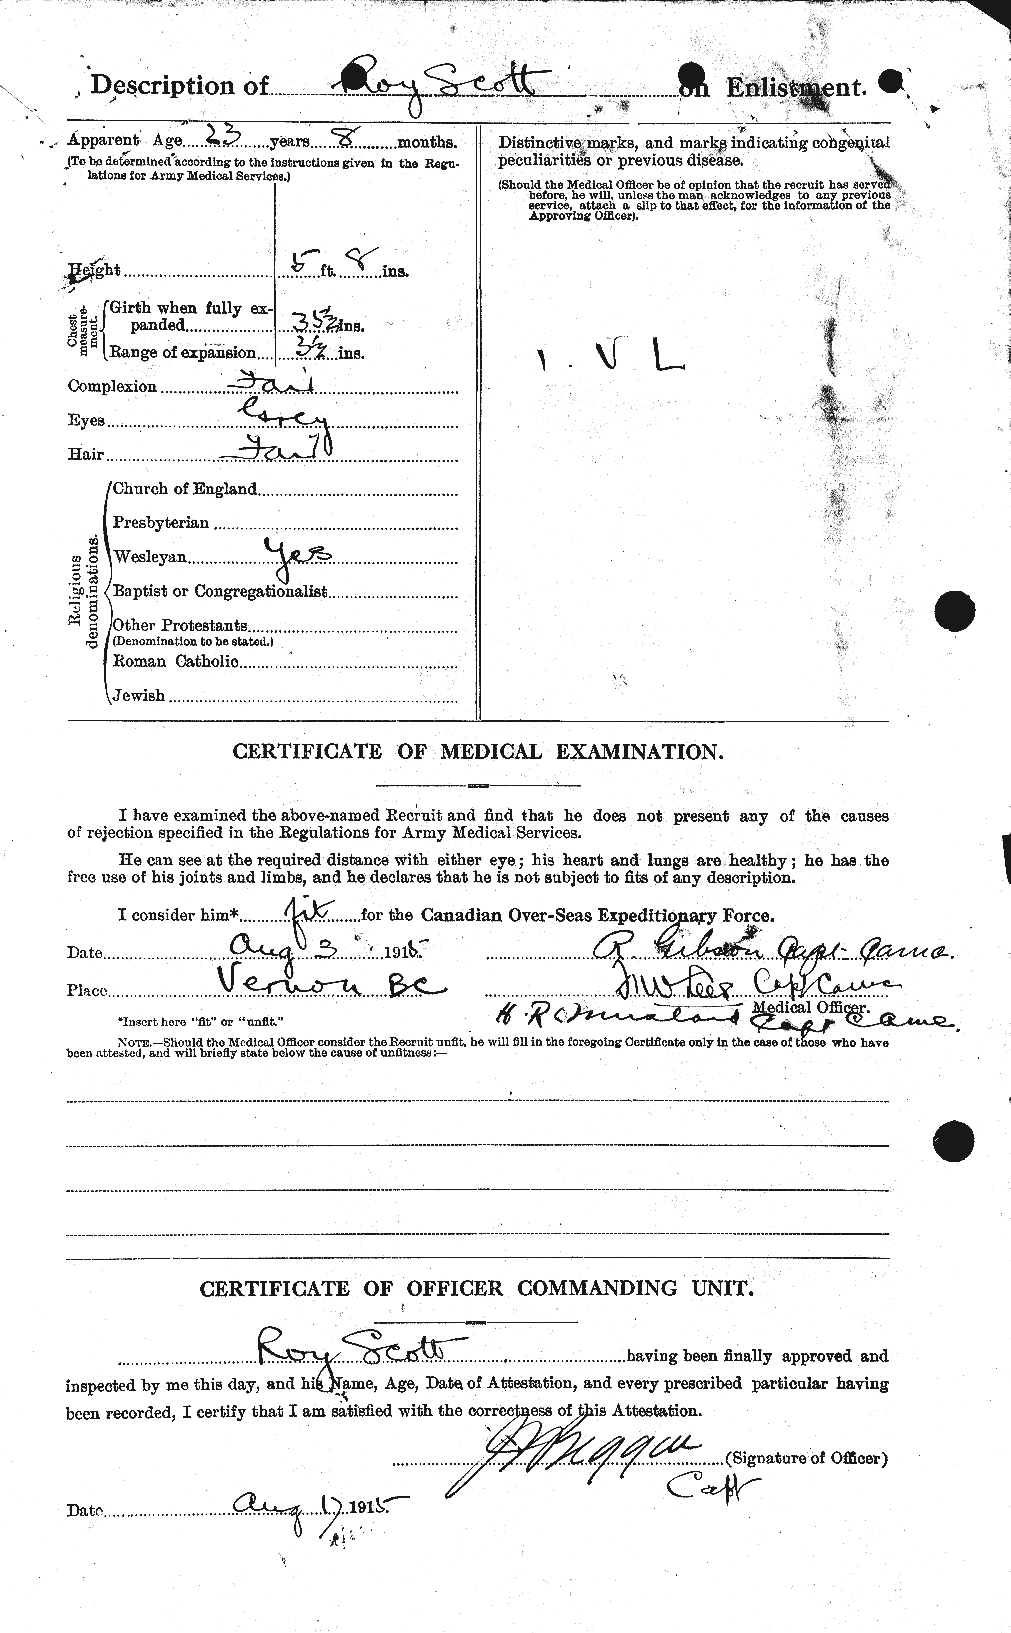 Dossiers du Personnel de la Première Guerre mondiale - CEC 089103b